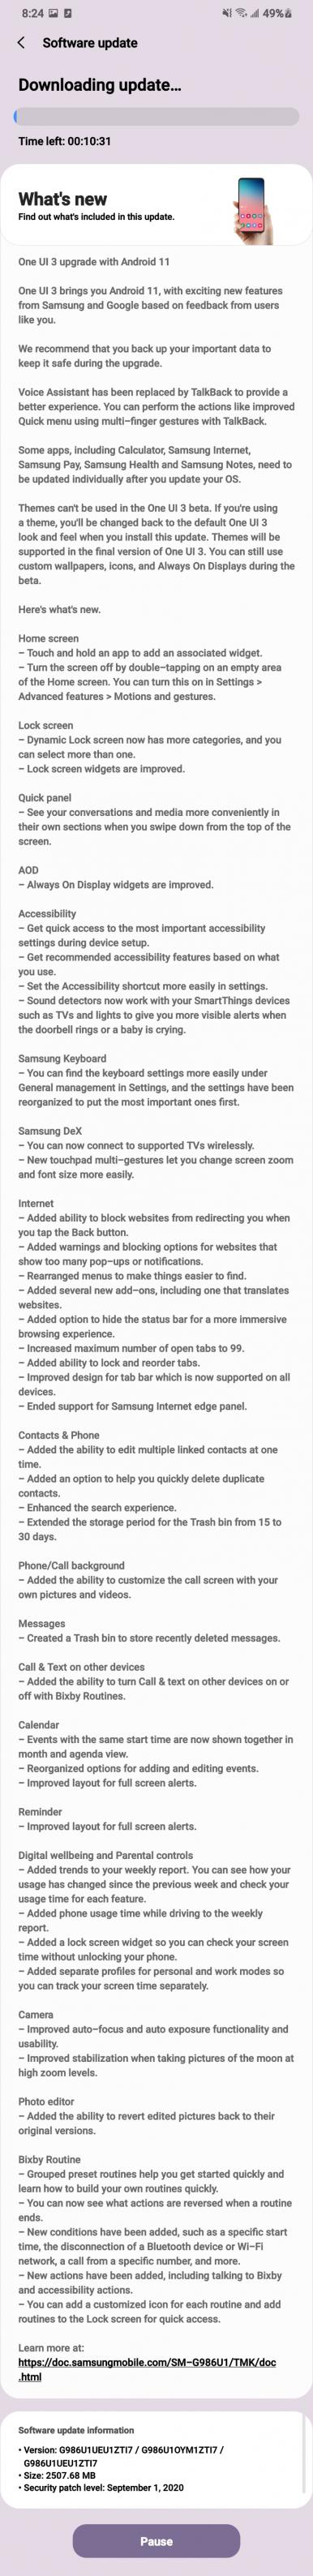 Samsung One UI 3.0 Changelog